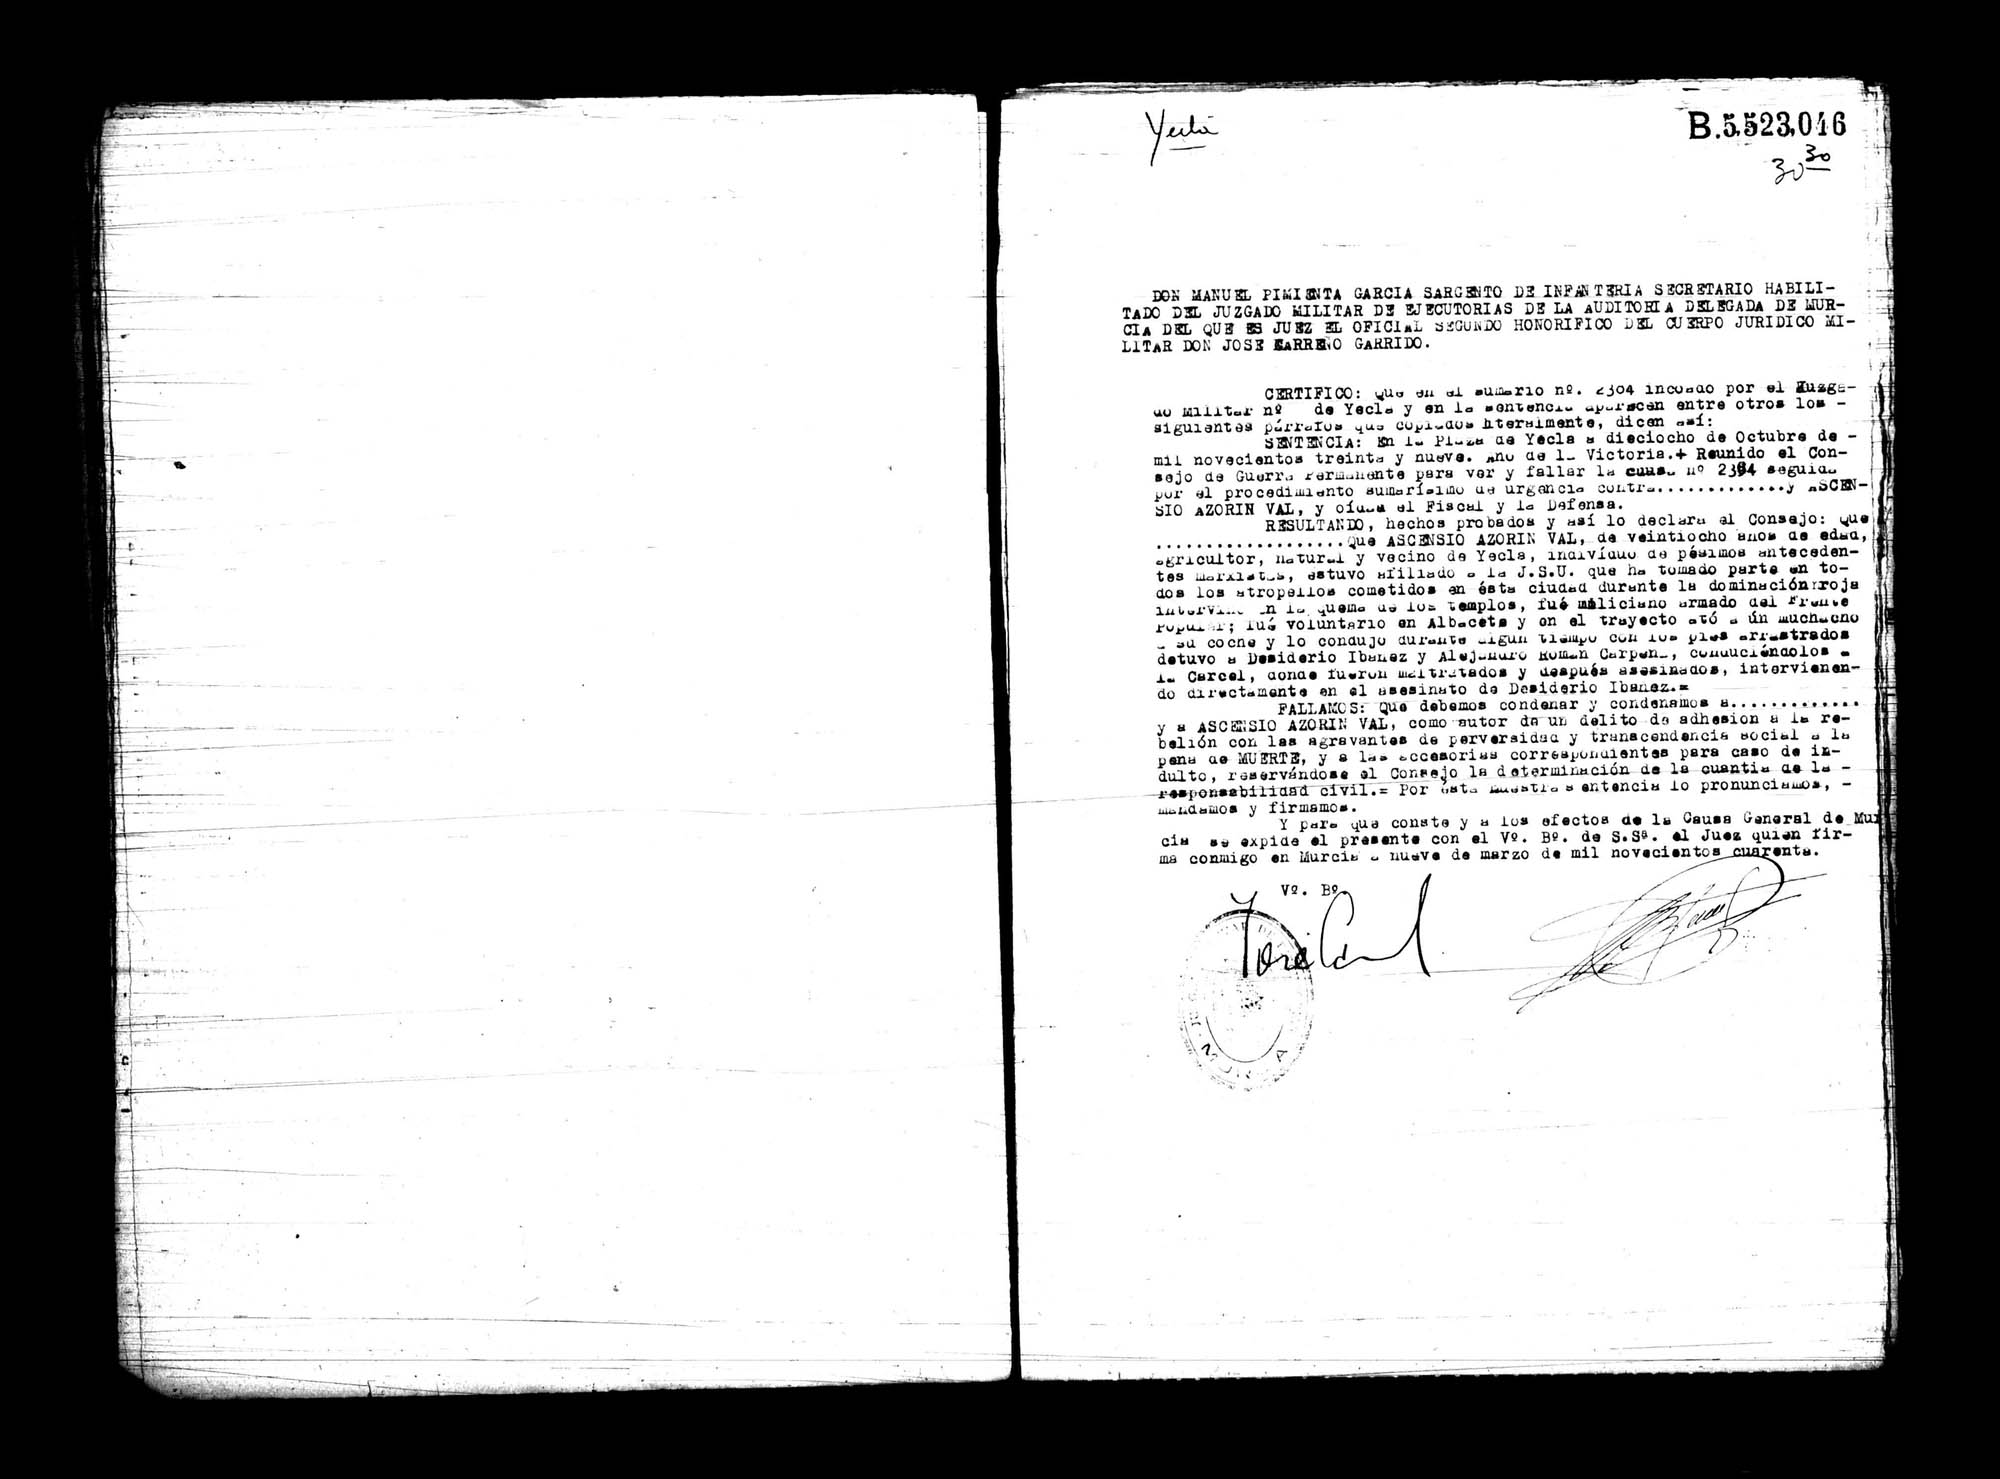 Certificado de la sentencia pronunciada contra Ascensio Azorín Val, causa 2384, el 18 de octubre de 1939 en Yecla.